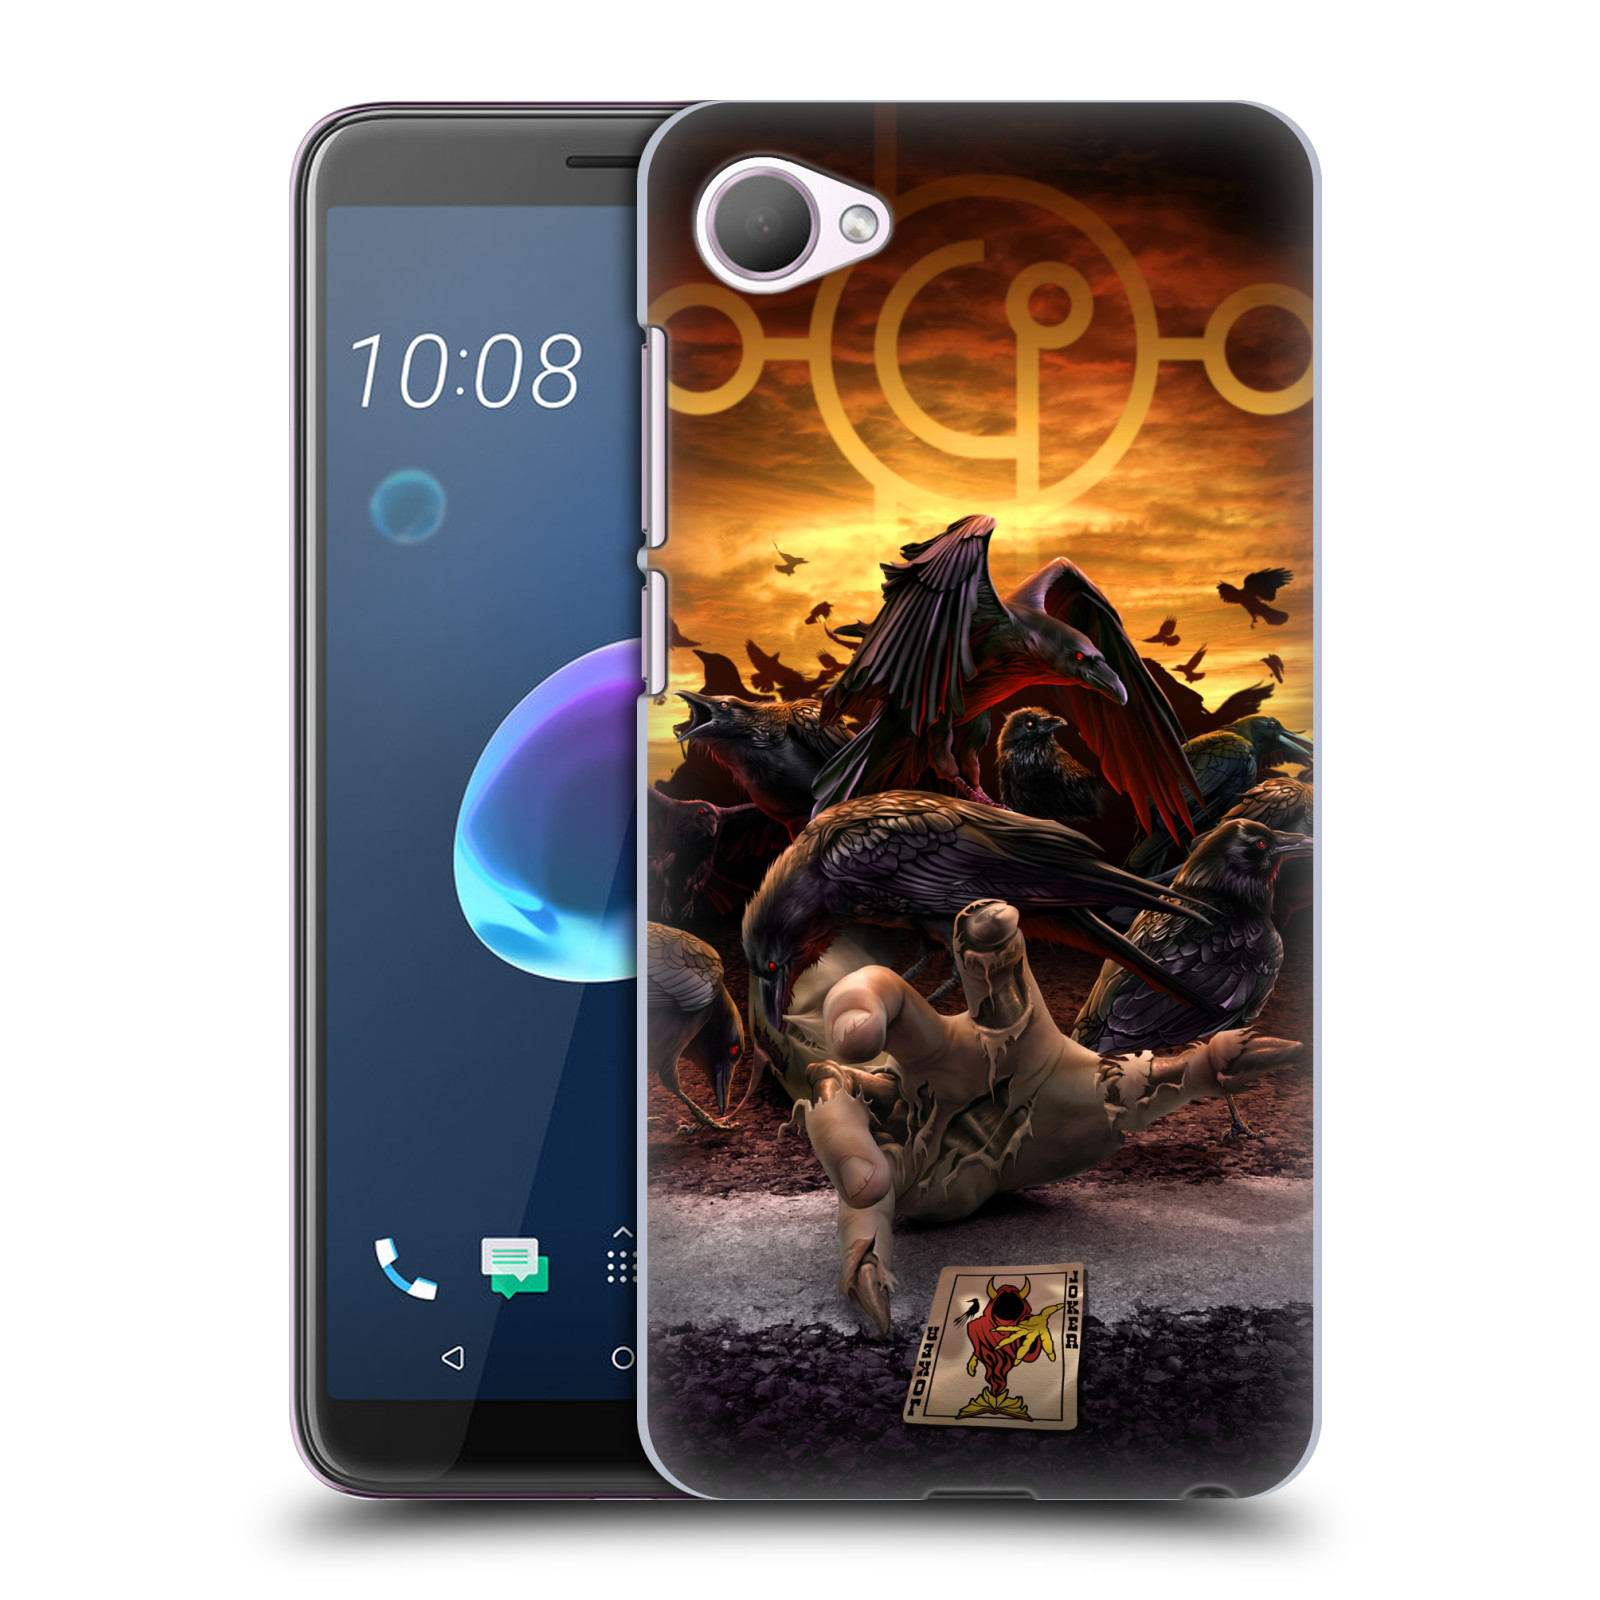 Pouzdro na mobil HTC Desire 12 / Desire 12 DUAL SIM - HEAD CASE - Fantasy kresby Tom Wood - Vrahové koruny